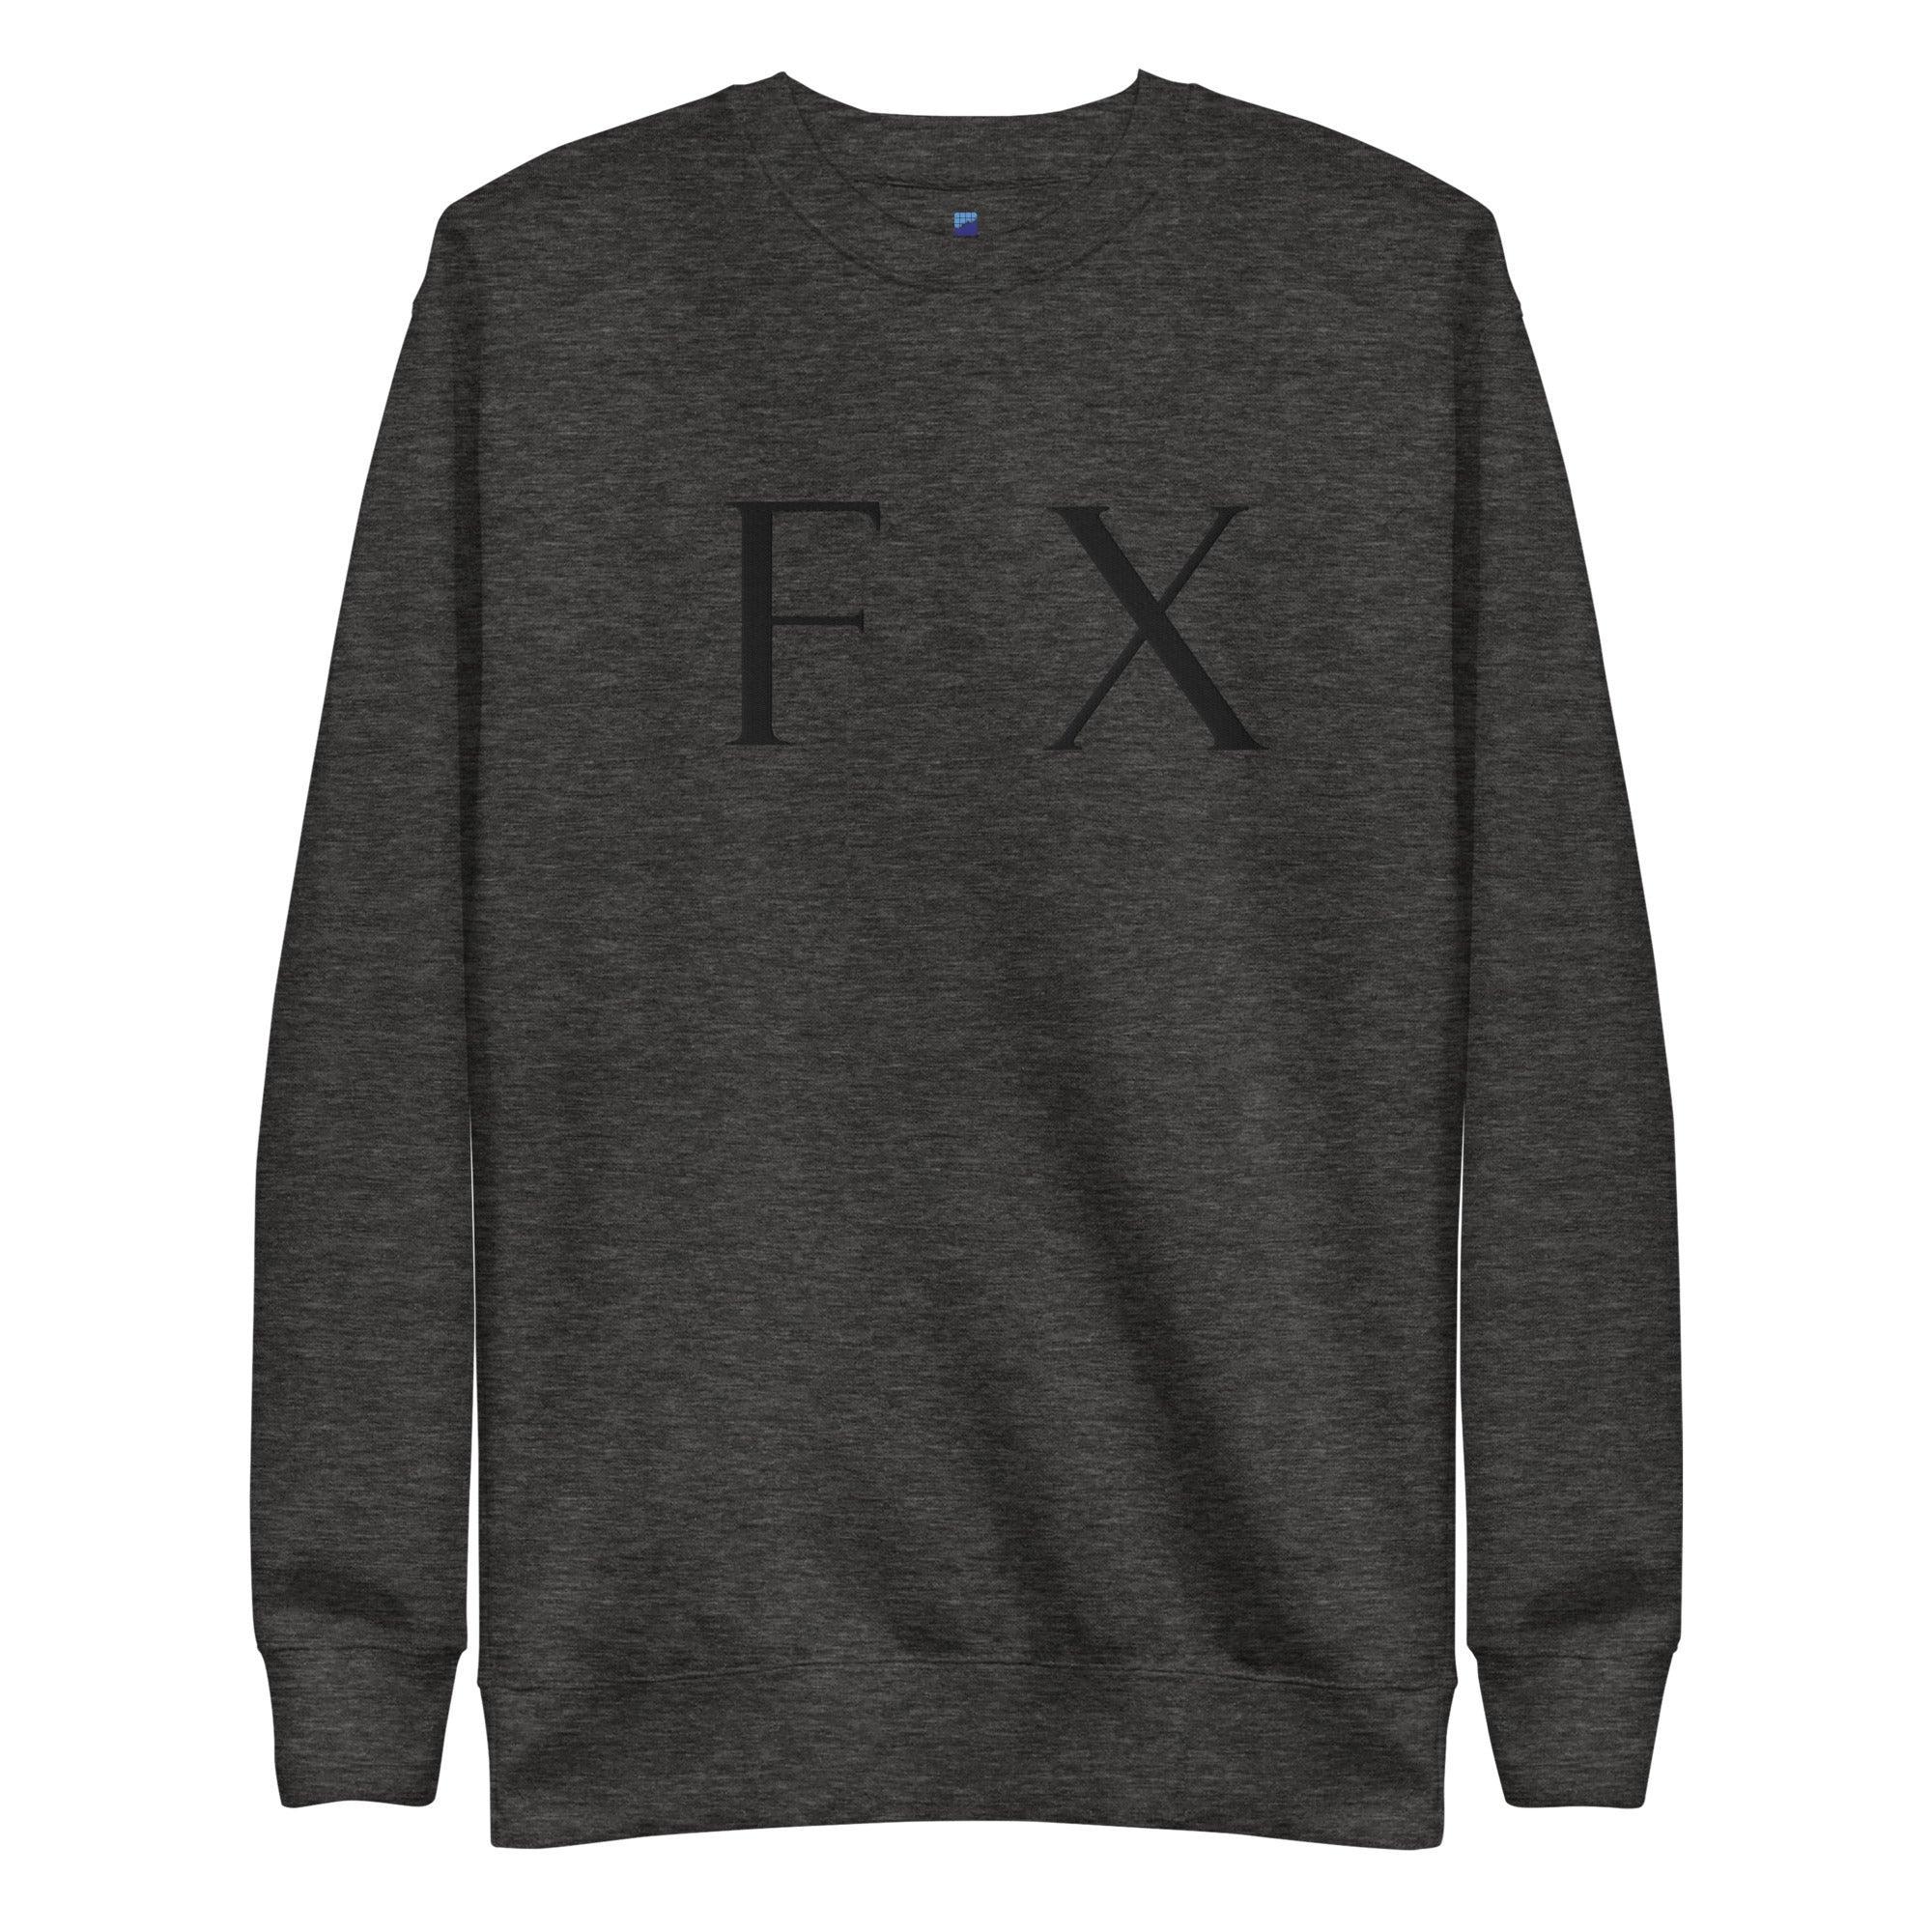 FX | Forex Sweatshirt - InvestmenTees